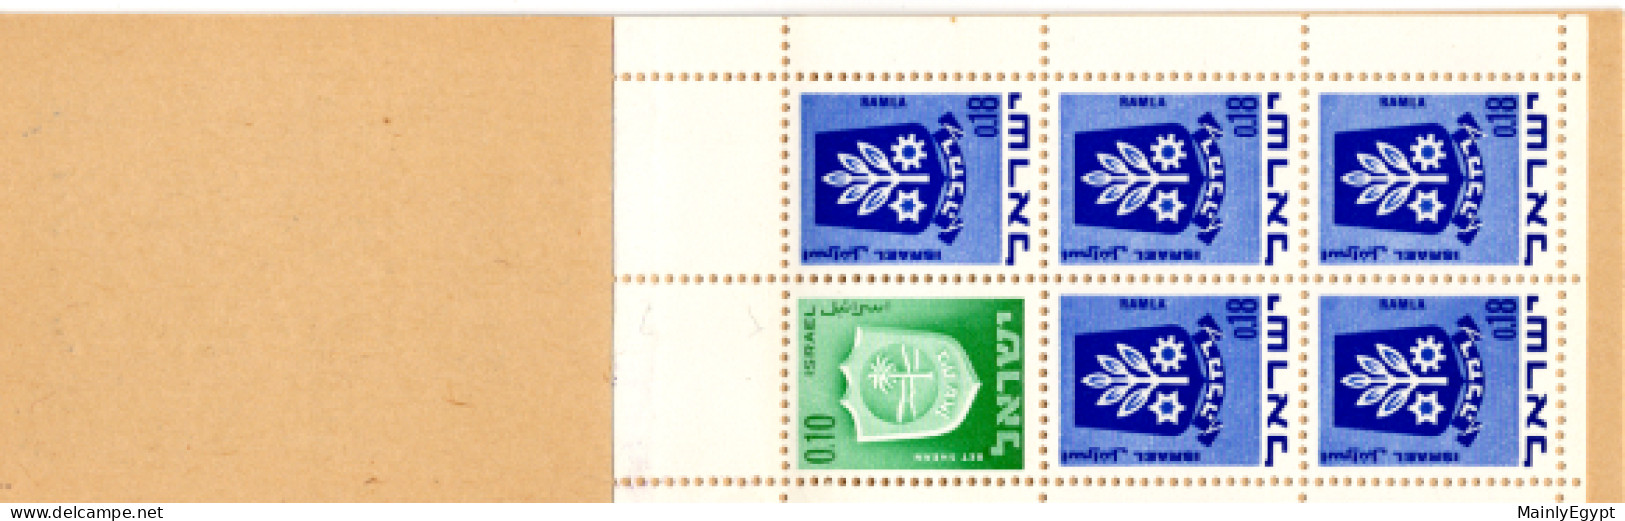 ISRAEL: Stamp Booklet 1970 MNH #F020 - Booklets